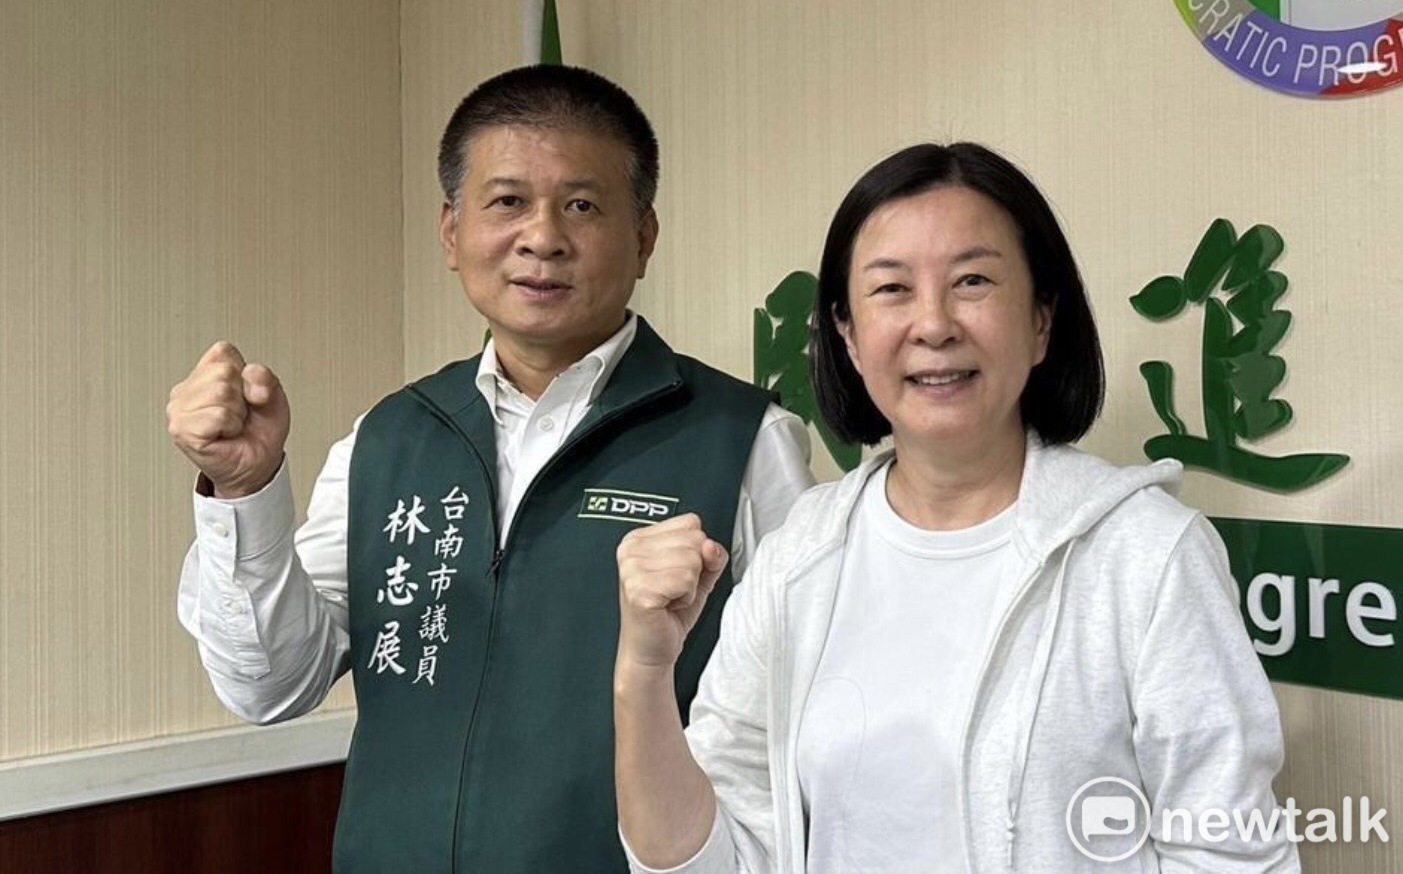 台南市正副議長選情》合縱連橫撲朔迷離  綠關鍵議員最後動向受關注 | 政